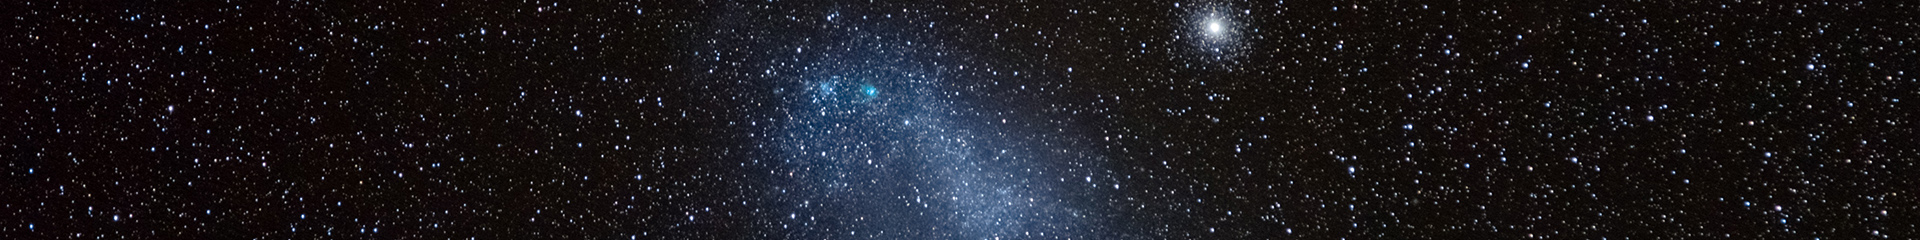 Обзор всего неба телескопом ART-XC имени М.Н. Павлинского